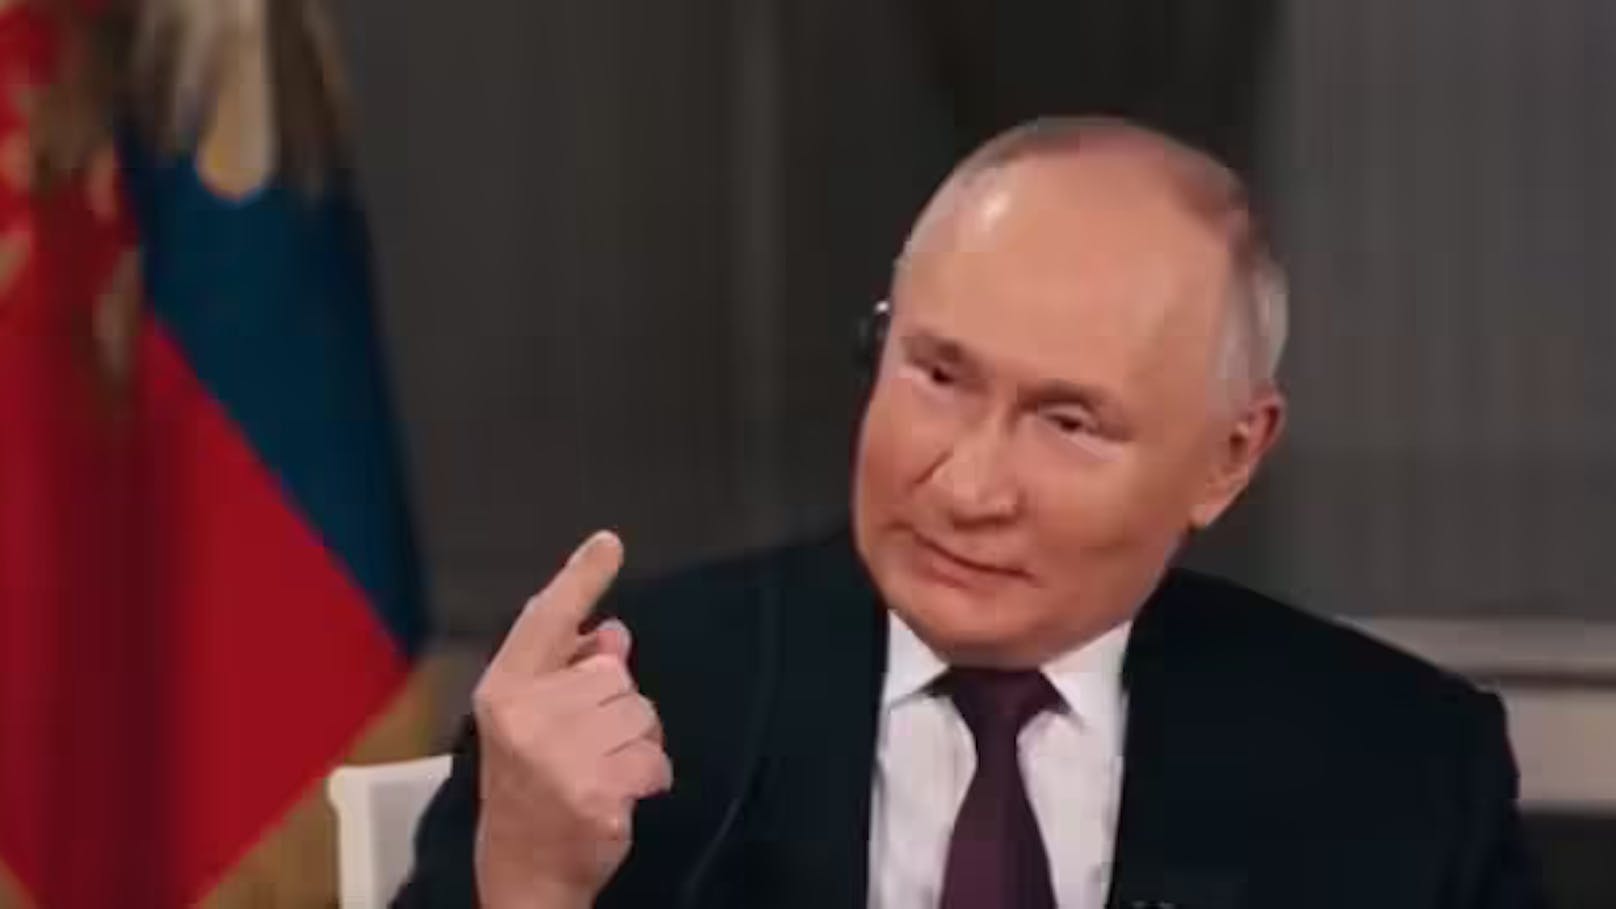 "Unmöglich!" Putin lässt mit Aussage aufhorchen